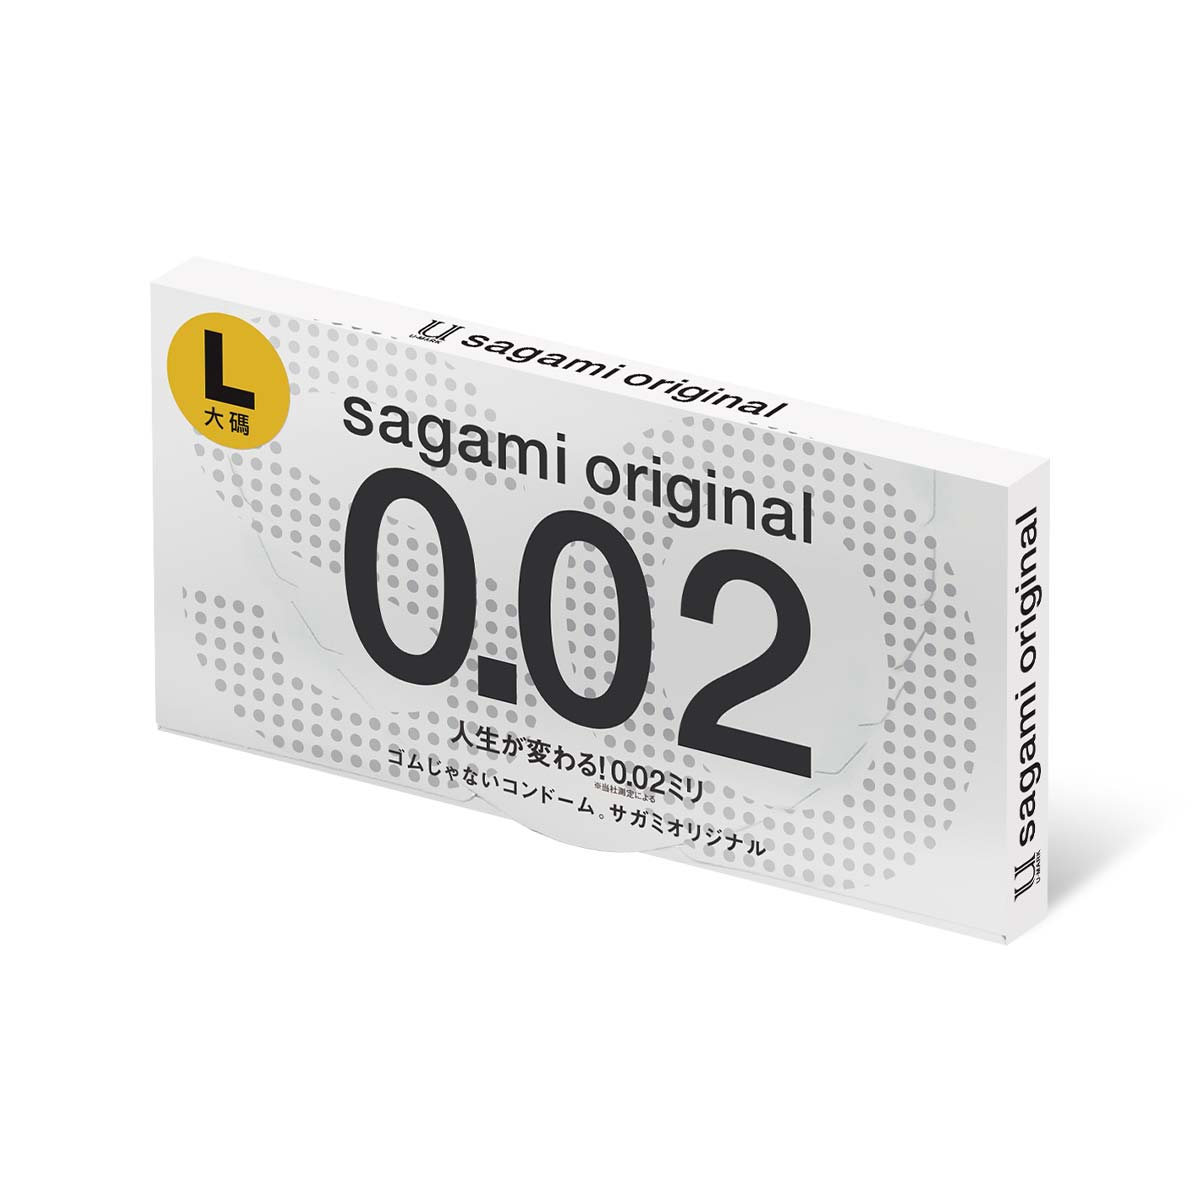 Sagami Original 0.02 L-size 58mm 2's Pack PU Condom (Short expiry)-p_1